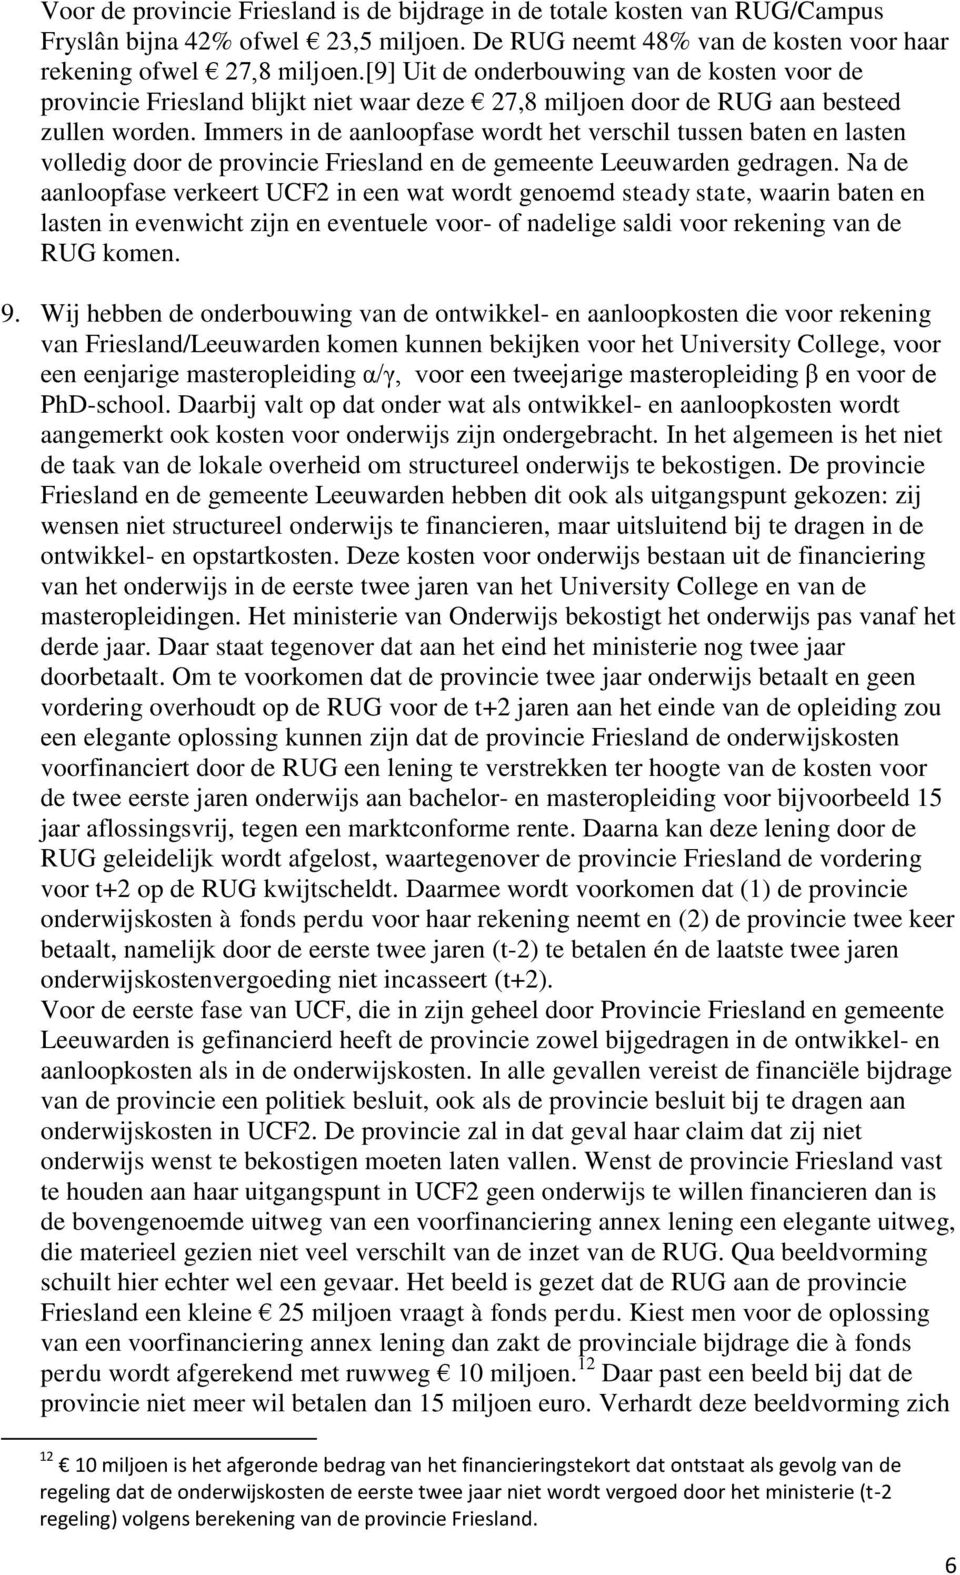 Immers in de aanloopfase wordt het verschil tussen baten en lasten volledig door de provincie Friesland en de gemeente Leeuwarden gedragen.